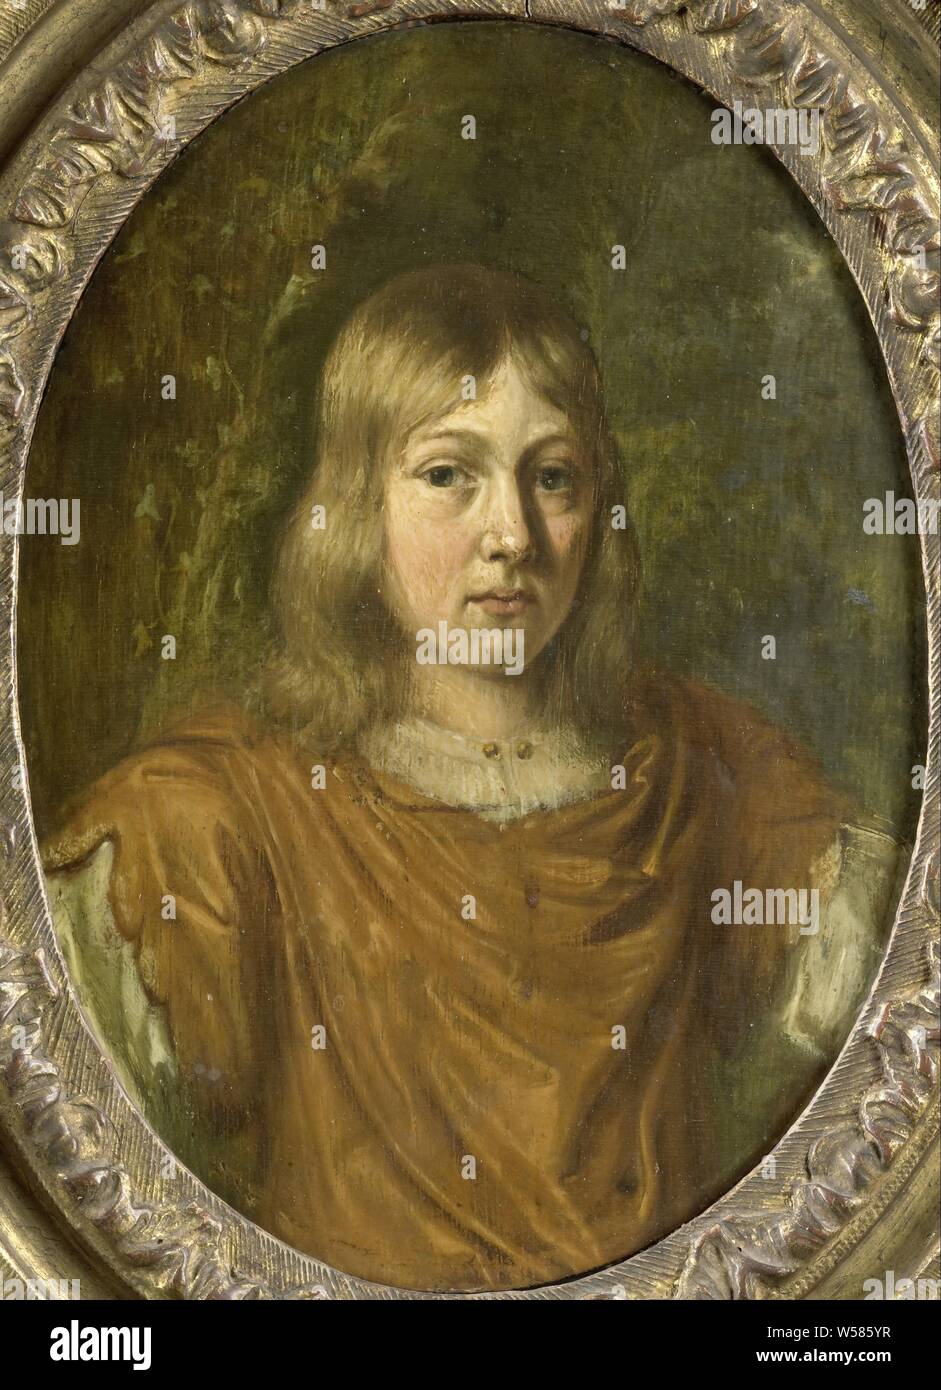 Portrait d'un jeune homme, Portrait d'un jeune homme à l'austérité, dans un ovale, sur un fond de feuillage, historique anonyme personne représentée, Jan van Mieris (mentionné sur l'objet), 1680 - 1690, de bord, de la peinture à l'huile (peinture), h 14,3 cm × w 10,7 cm h 25,5 cm × w 21 cm × d 2,5 cm Banque D'Images